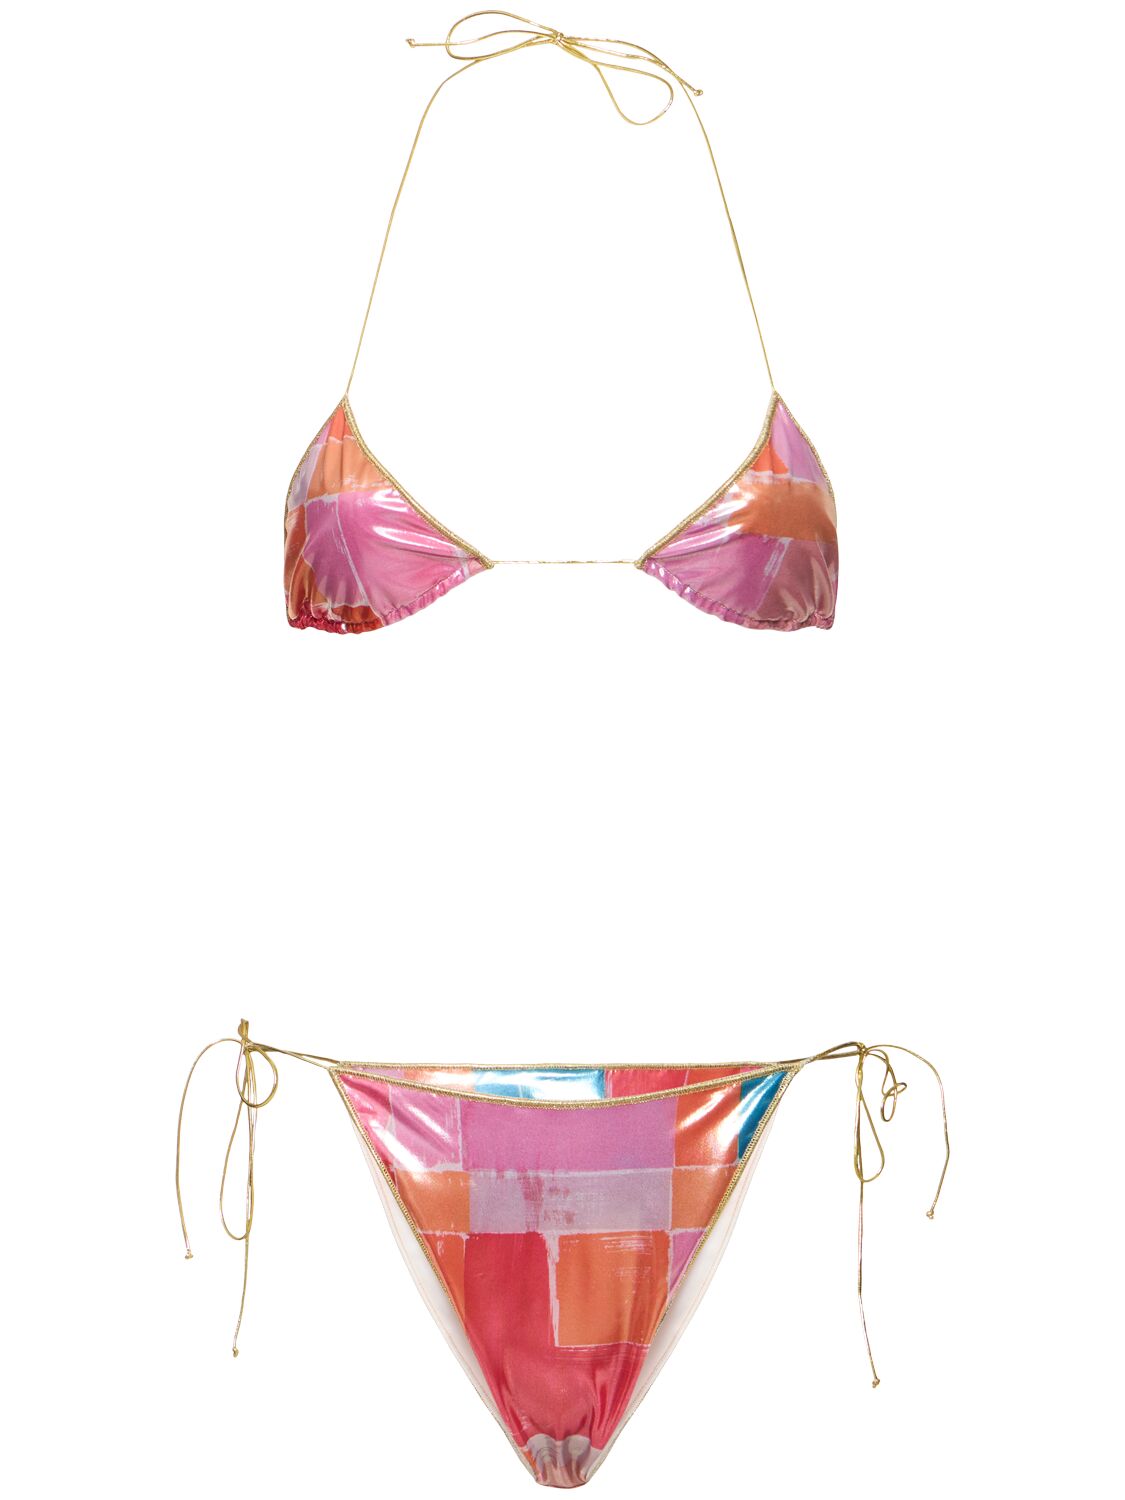 Sam Printed Triangle Bikini Set